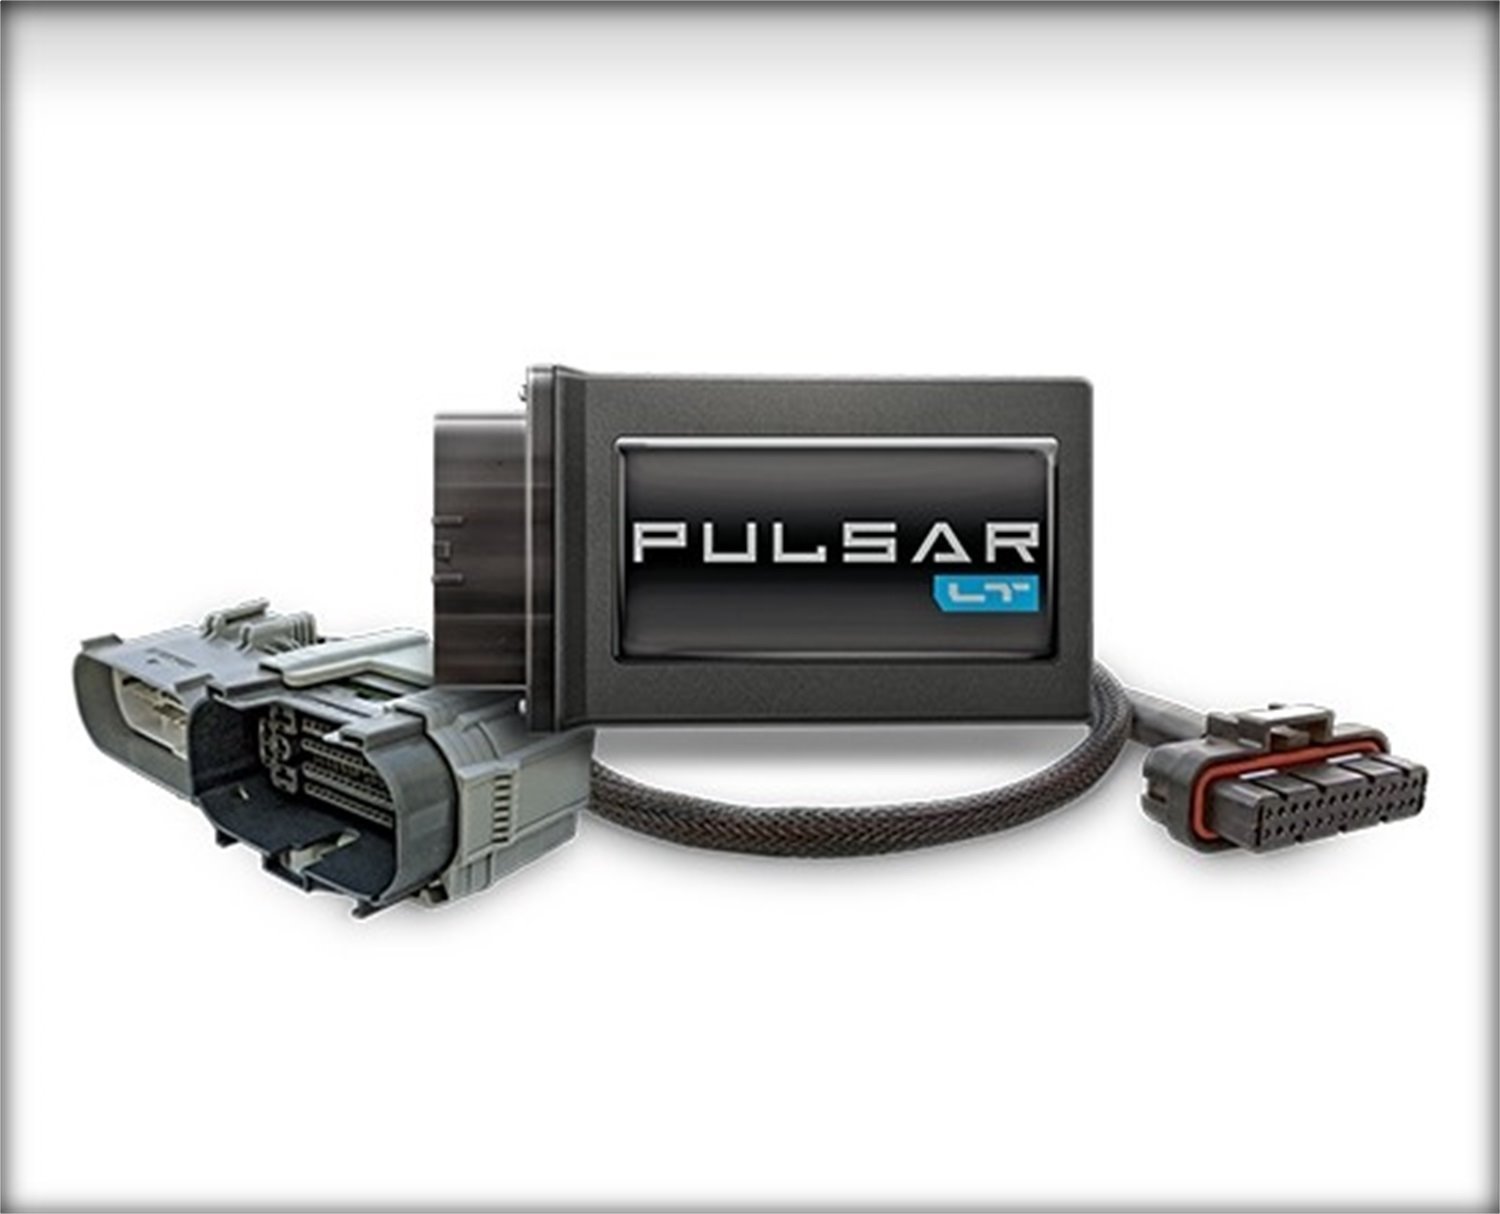 22451 Pulsar LT In-Line Tuning Module for 2019-2022 GM Sierra/Silverado 1500 5.3L/6.2L V8 Engines